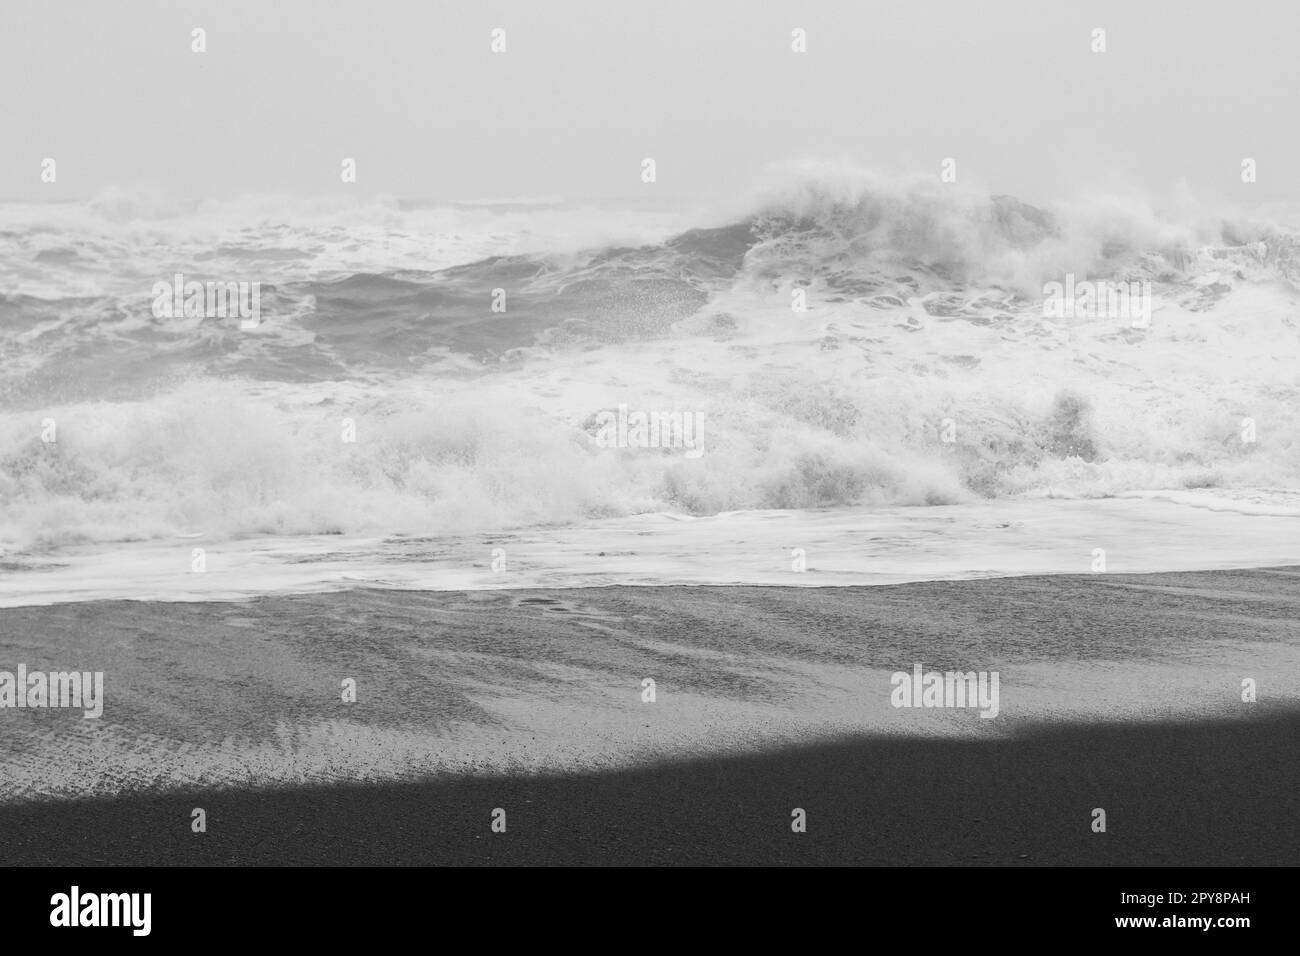 Beauté de la tempête à bord de mer monochrome paysage photo Banque D'Images